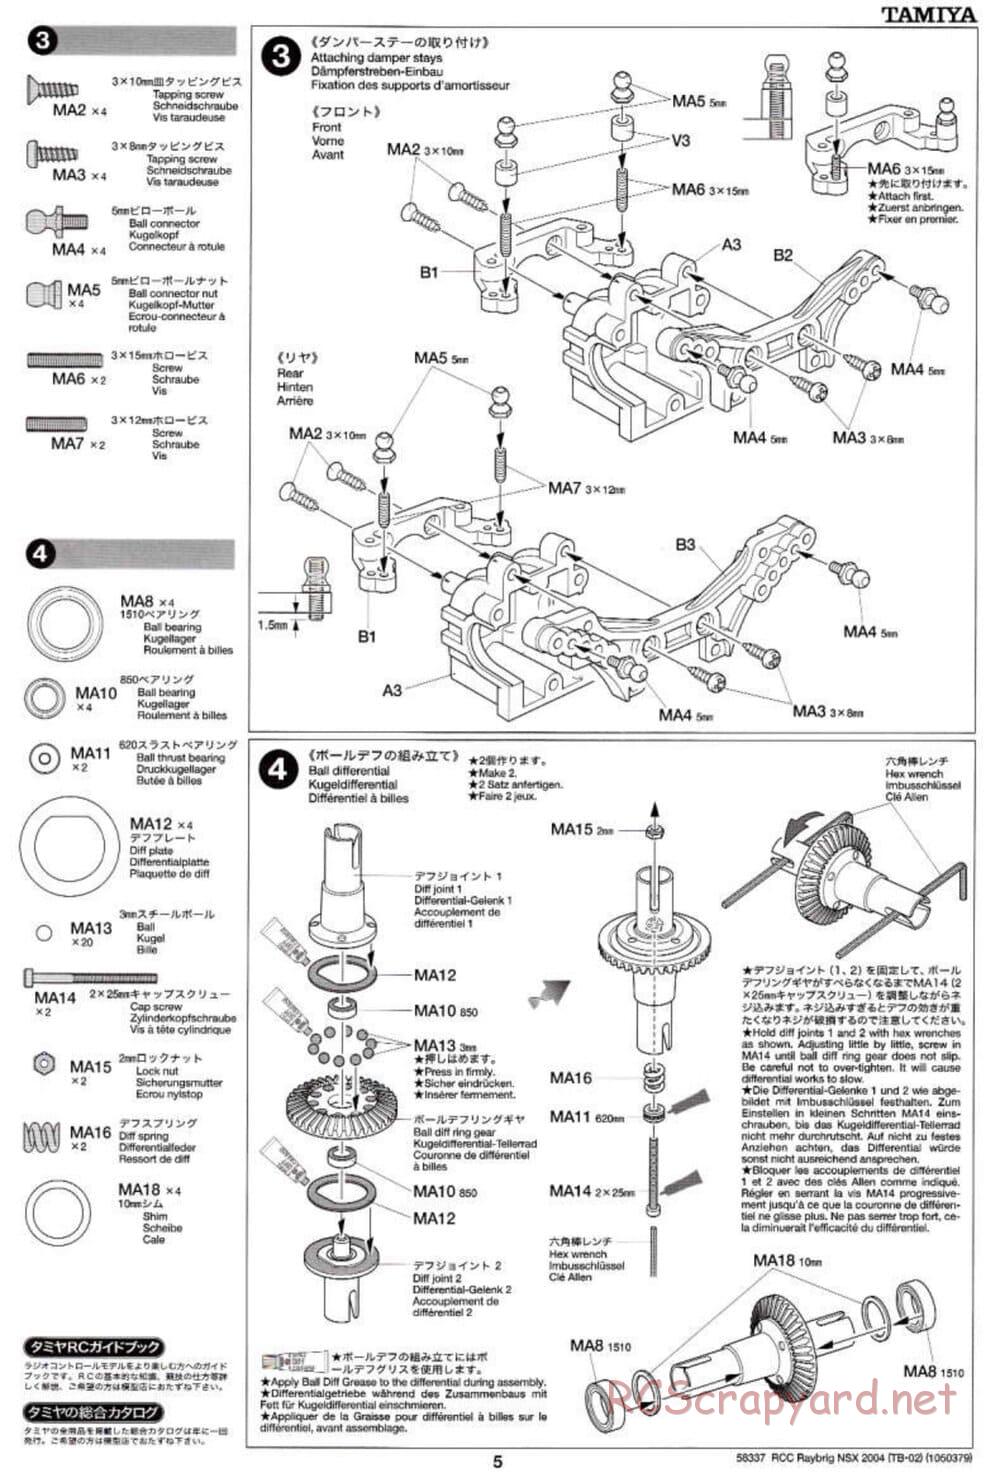 Tamiya - Raybrig NSX 2004 - TB-02 Chassis - Manual - Page 5